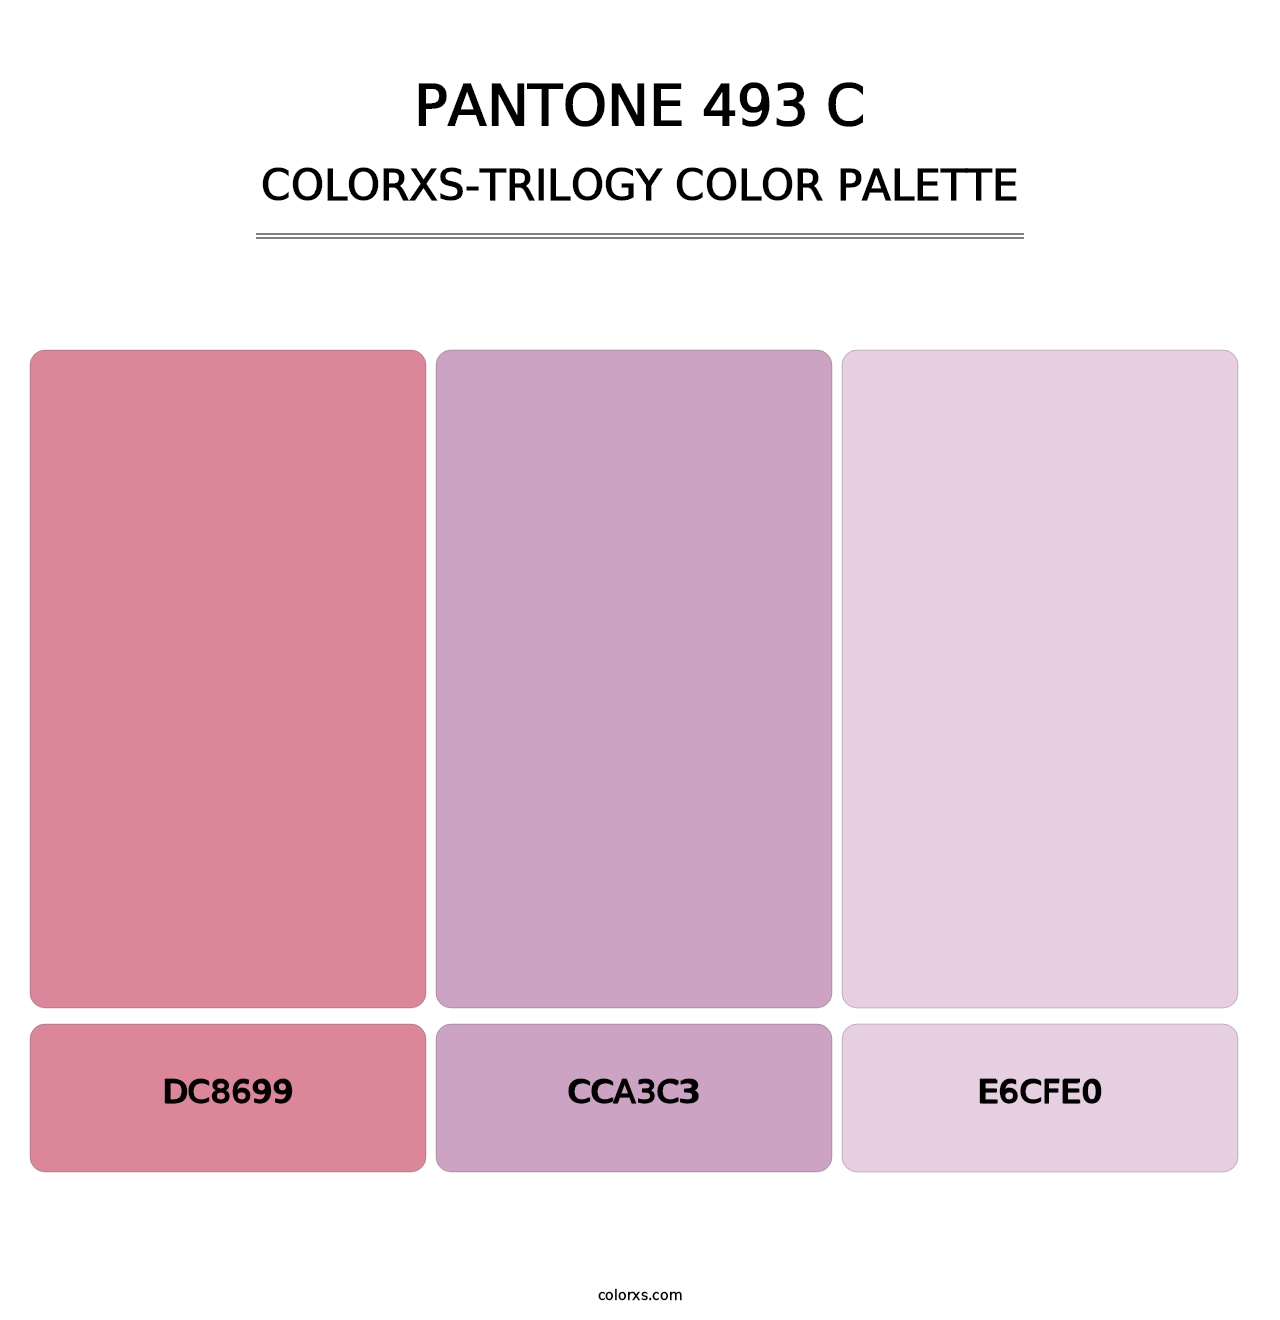 PANTONE 493 C - Colorxs Trilogy Palette